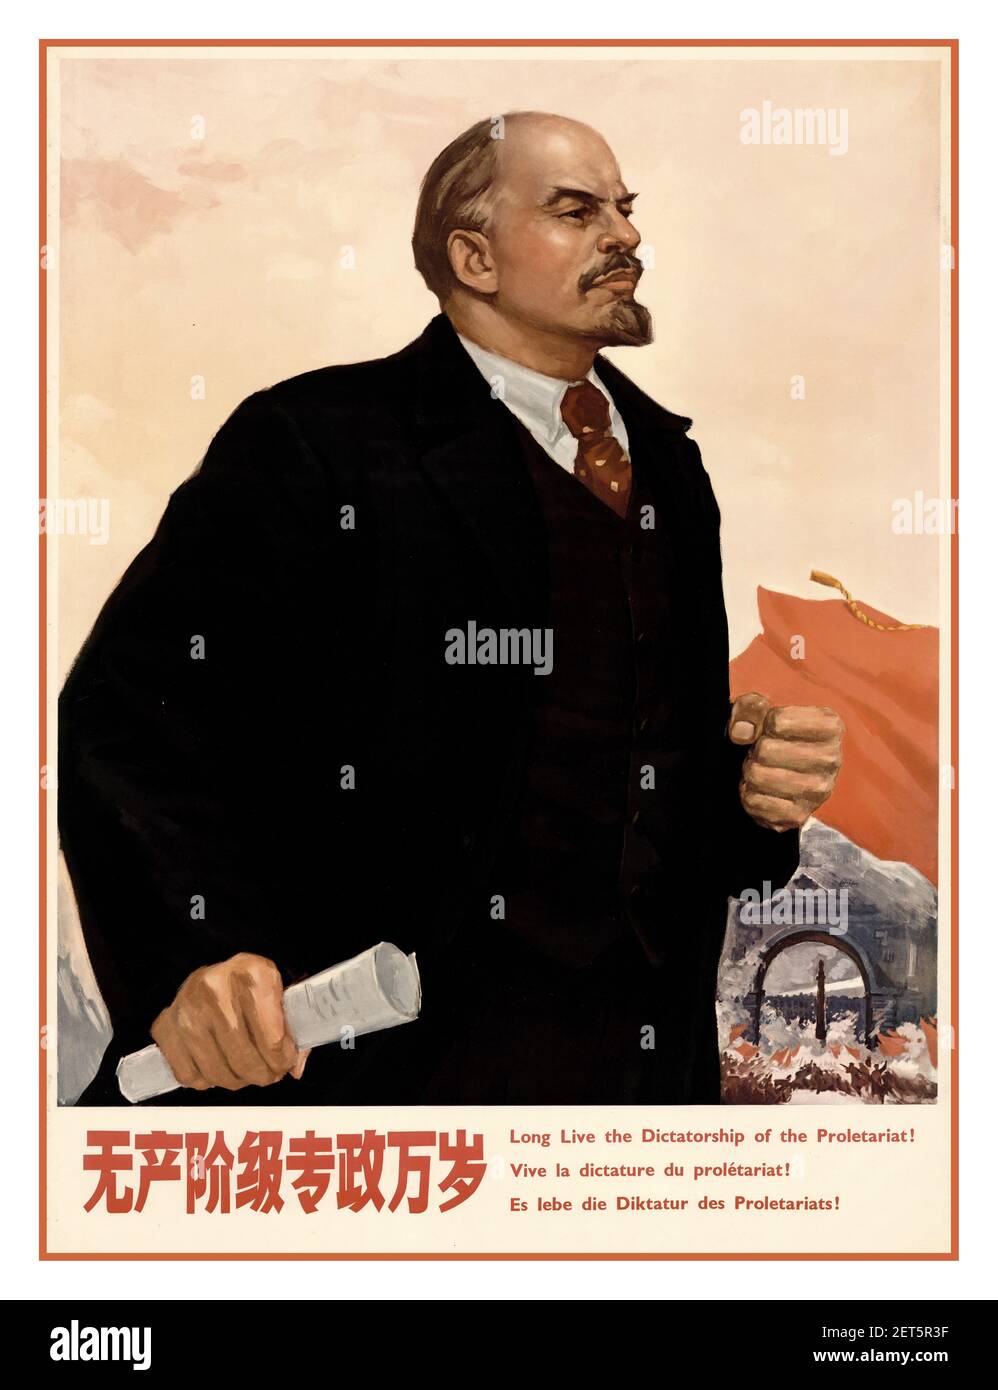 Manifesto di Propaganda cinese degli anni 80..per esempio illustrante - Lenin - ‘viva la dittatura del proletariato’ ! Cina comunista 1986. Foto Stock